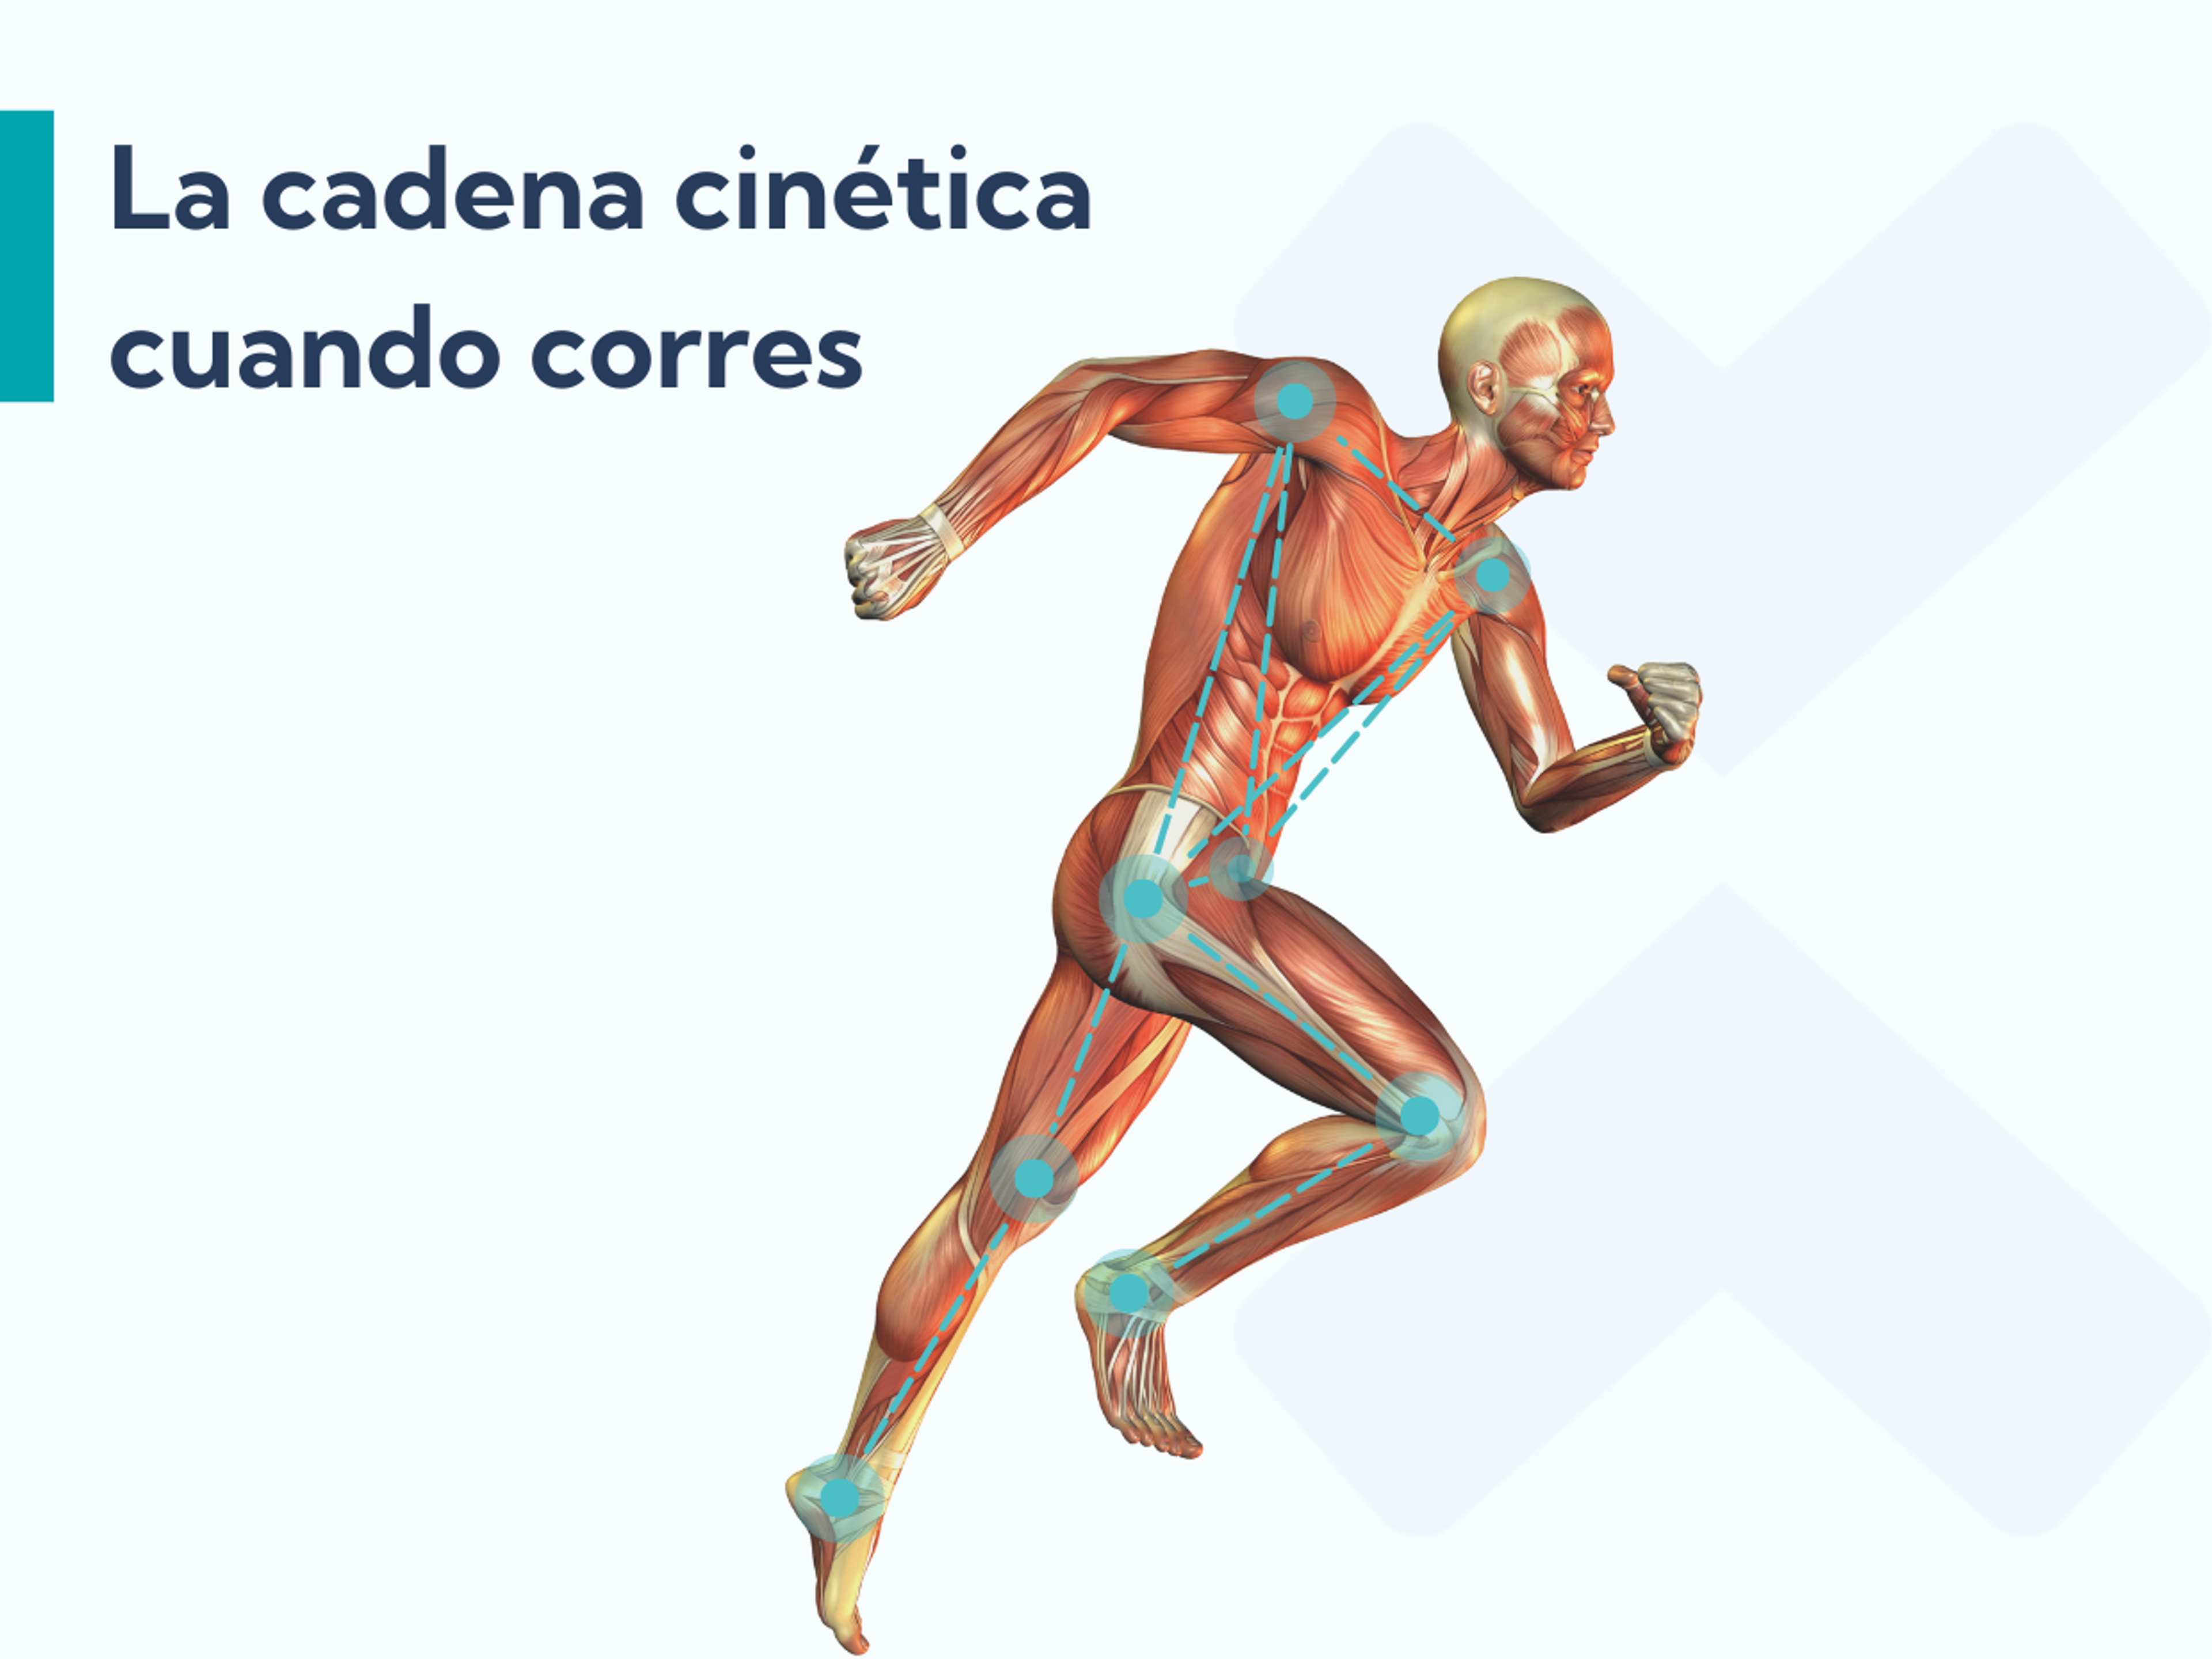 Los ejercicios para la cadera son buenos para la fascitis plantar porque mejoran la respuesta de la cadena cinética al correr.